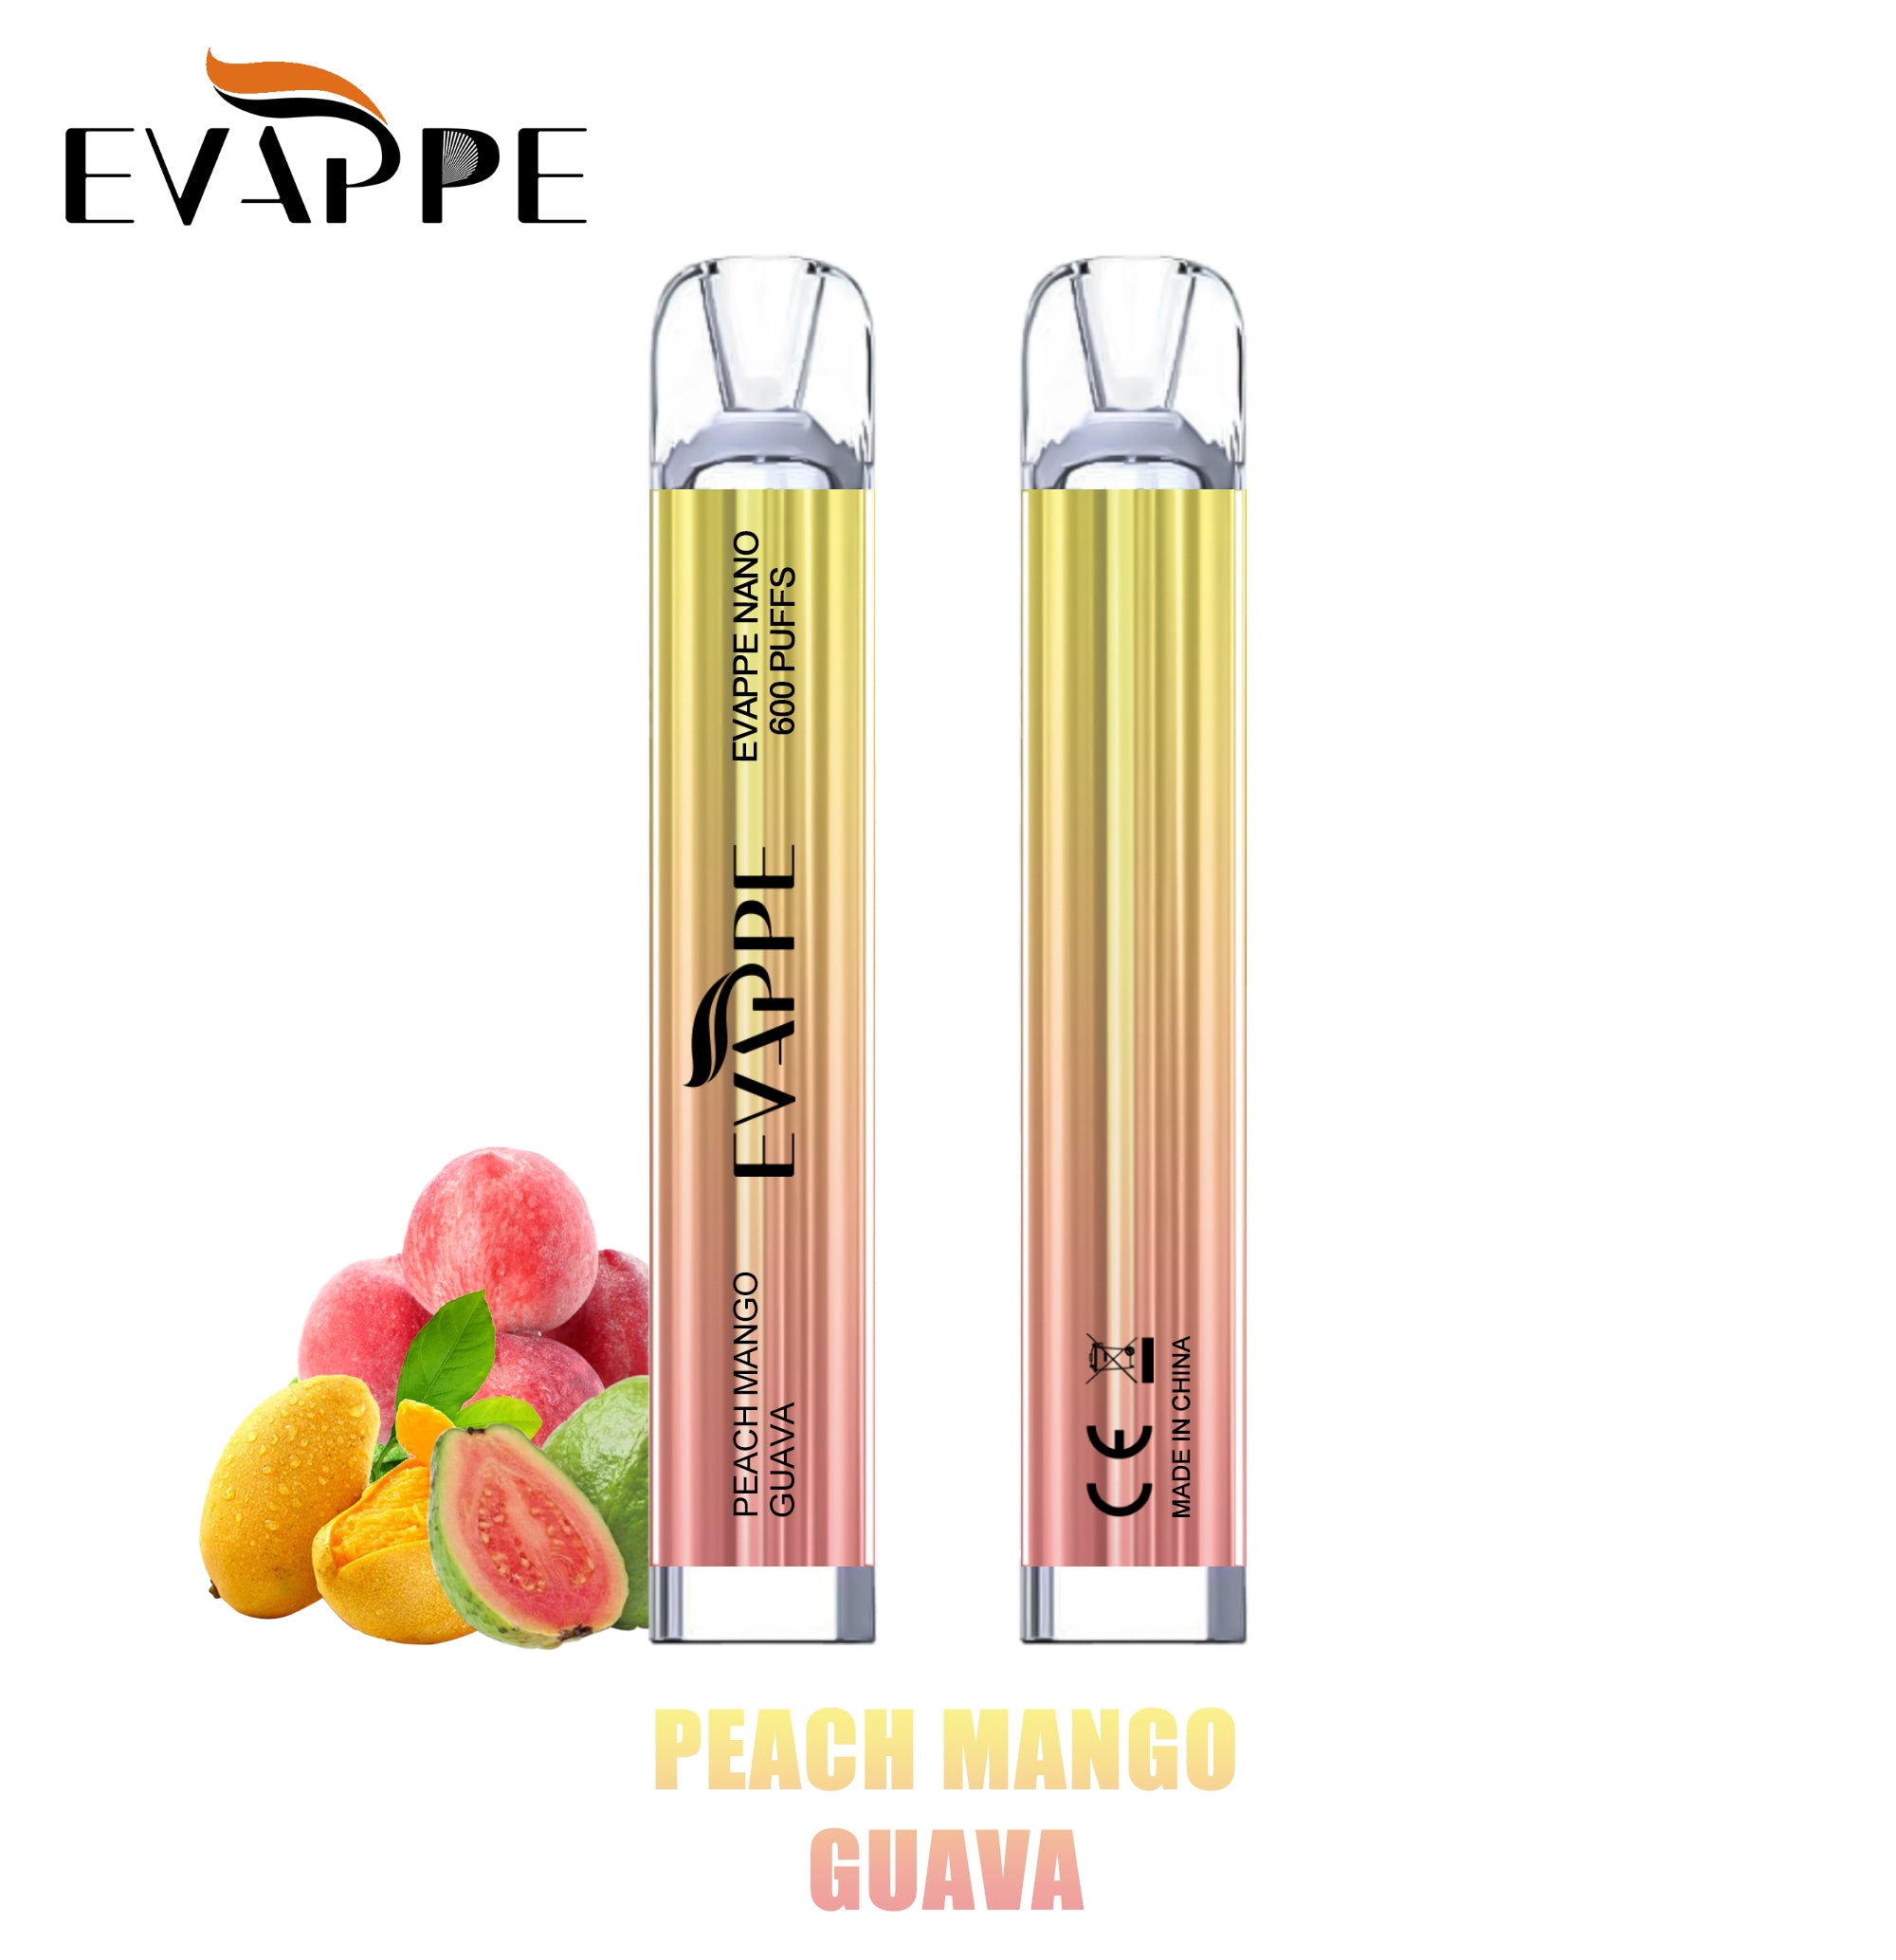 Evappe Nano Peach Mango Guava 600